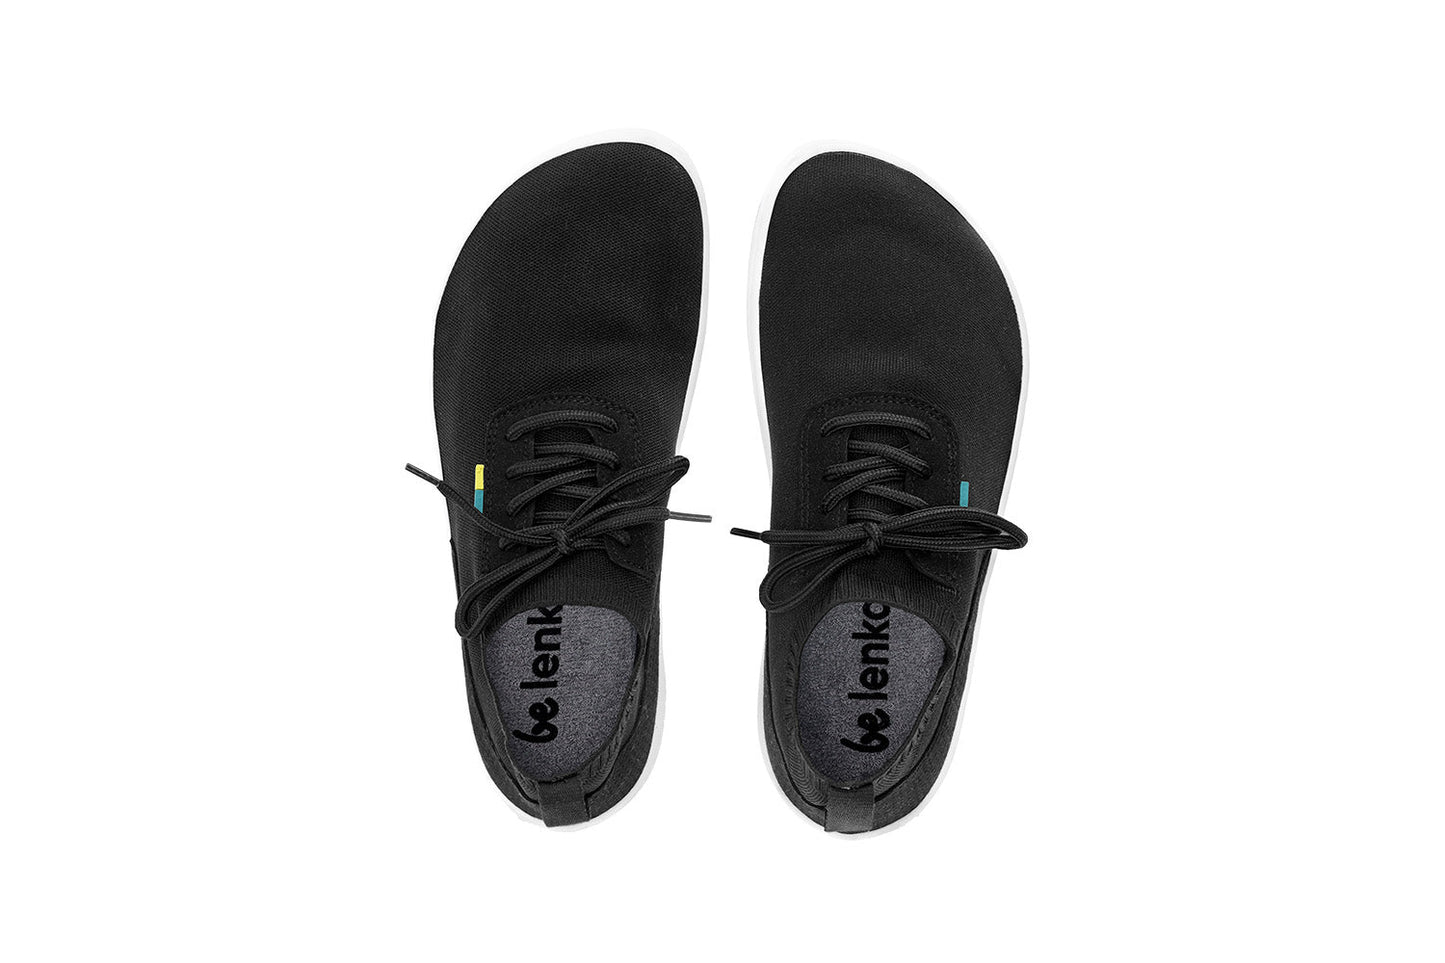 Barefoot Sneakers - Be Lenka Stride - Black & White 5 OzBarefoot Australia